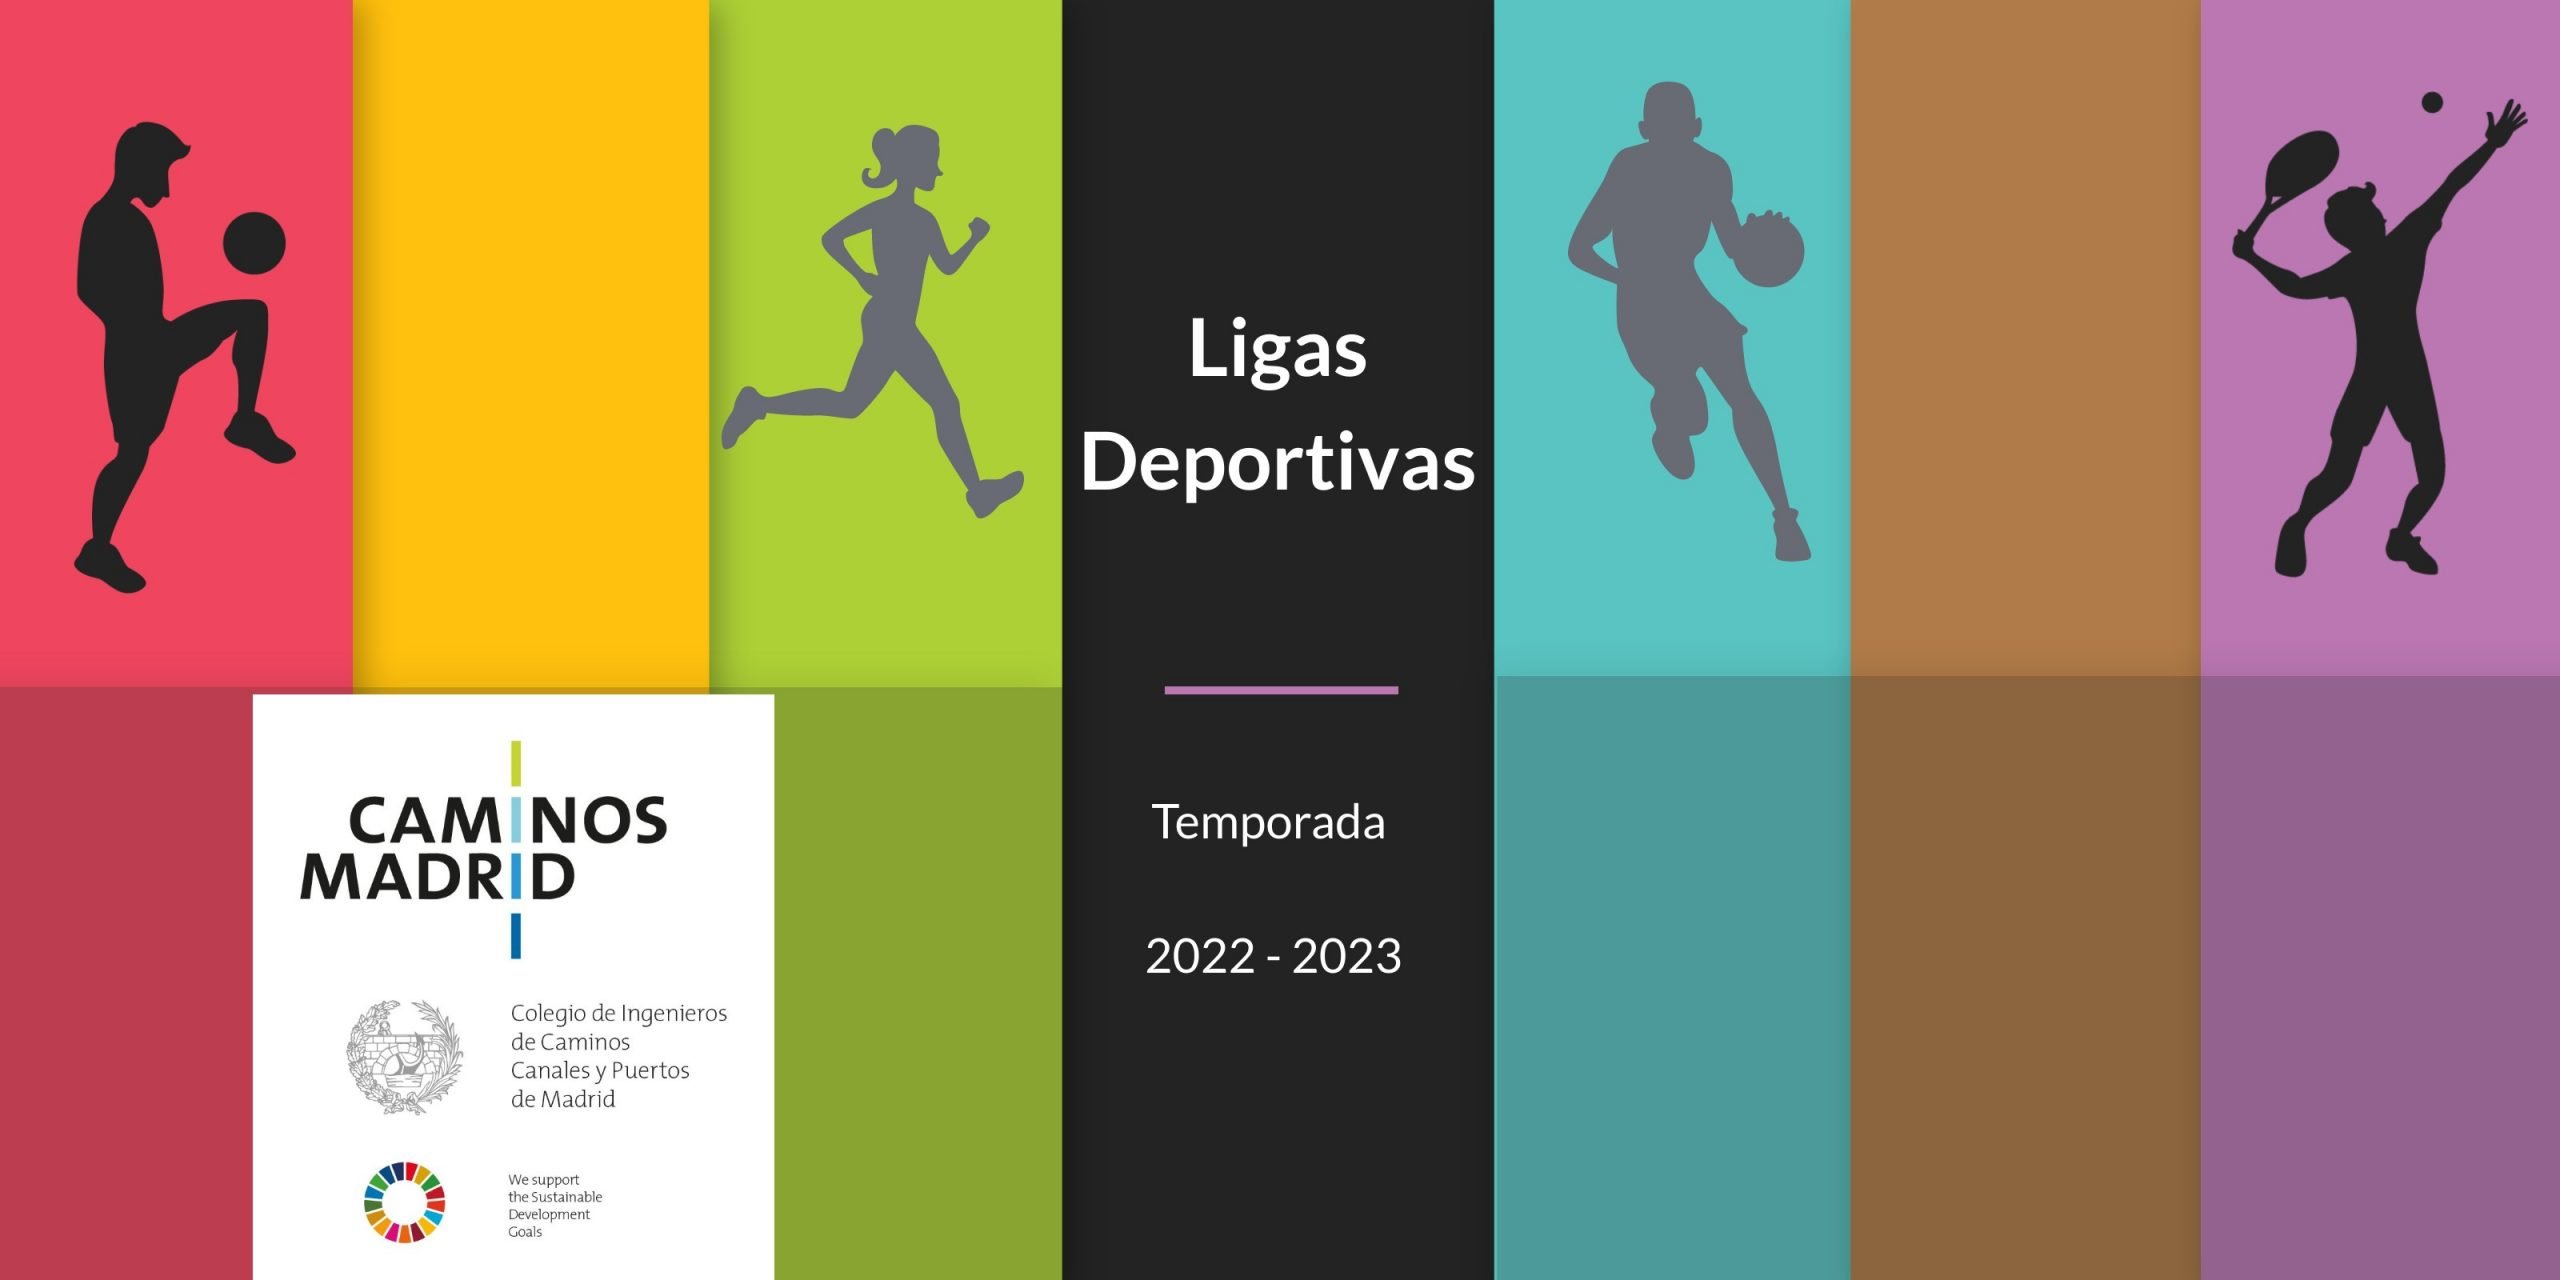 Ligas Deportivas (Temporada 2022- 2023)